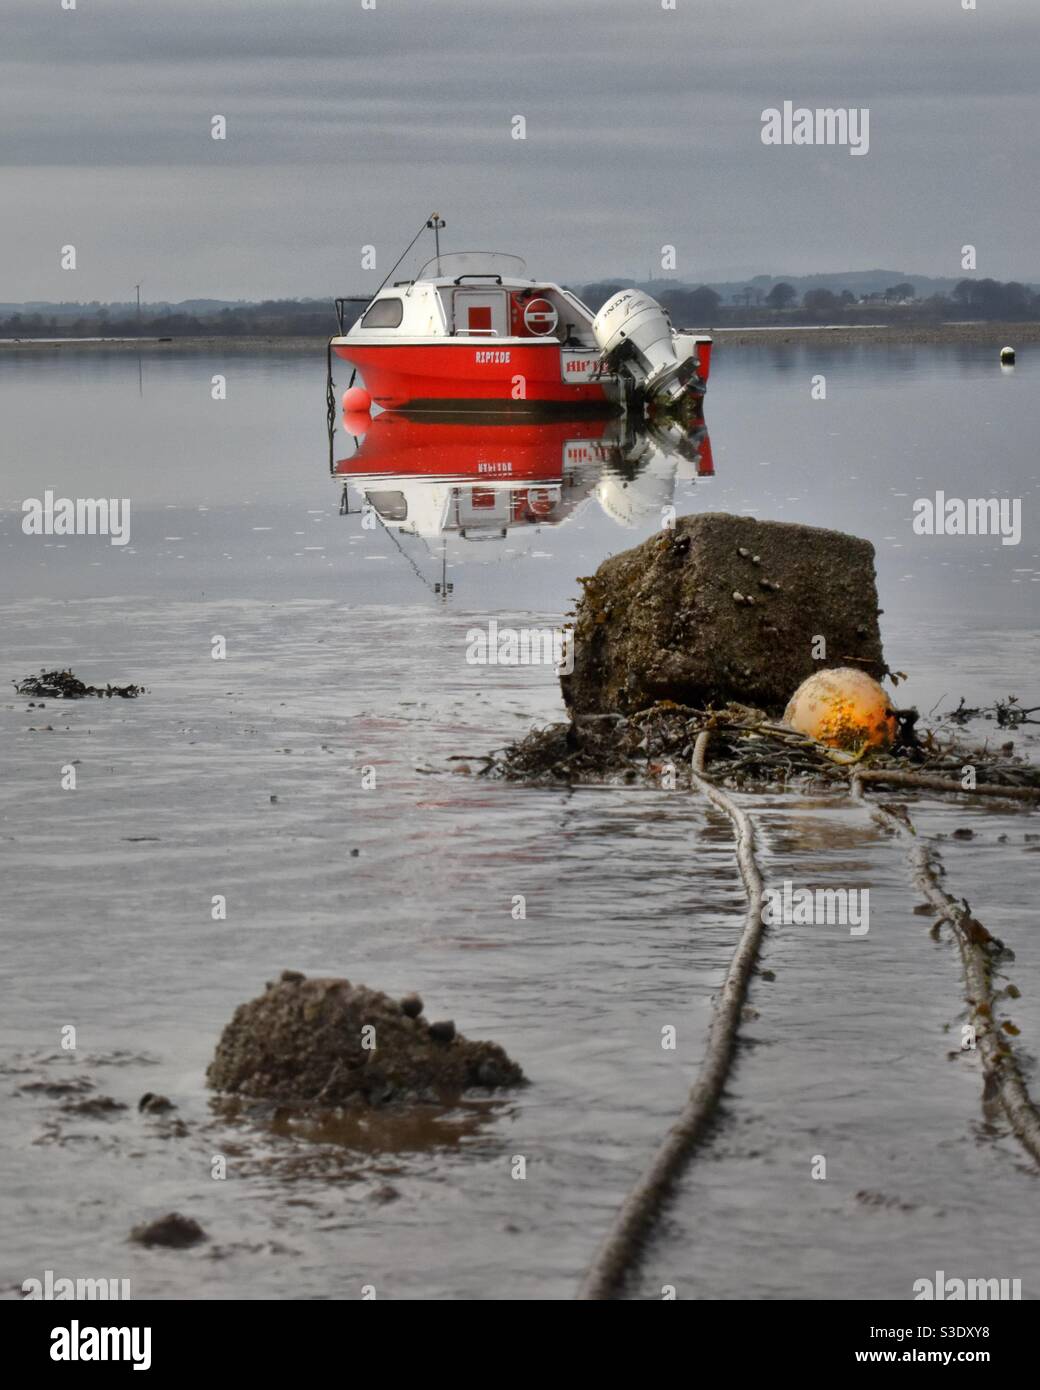 Red Boat se sienta en aguas tranquilas en un día aburrido Foto de stock